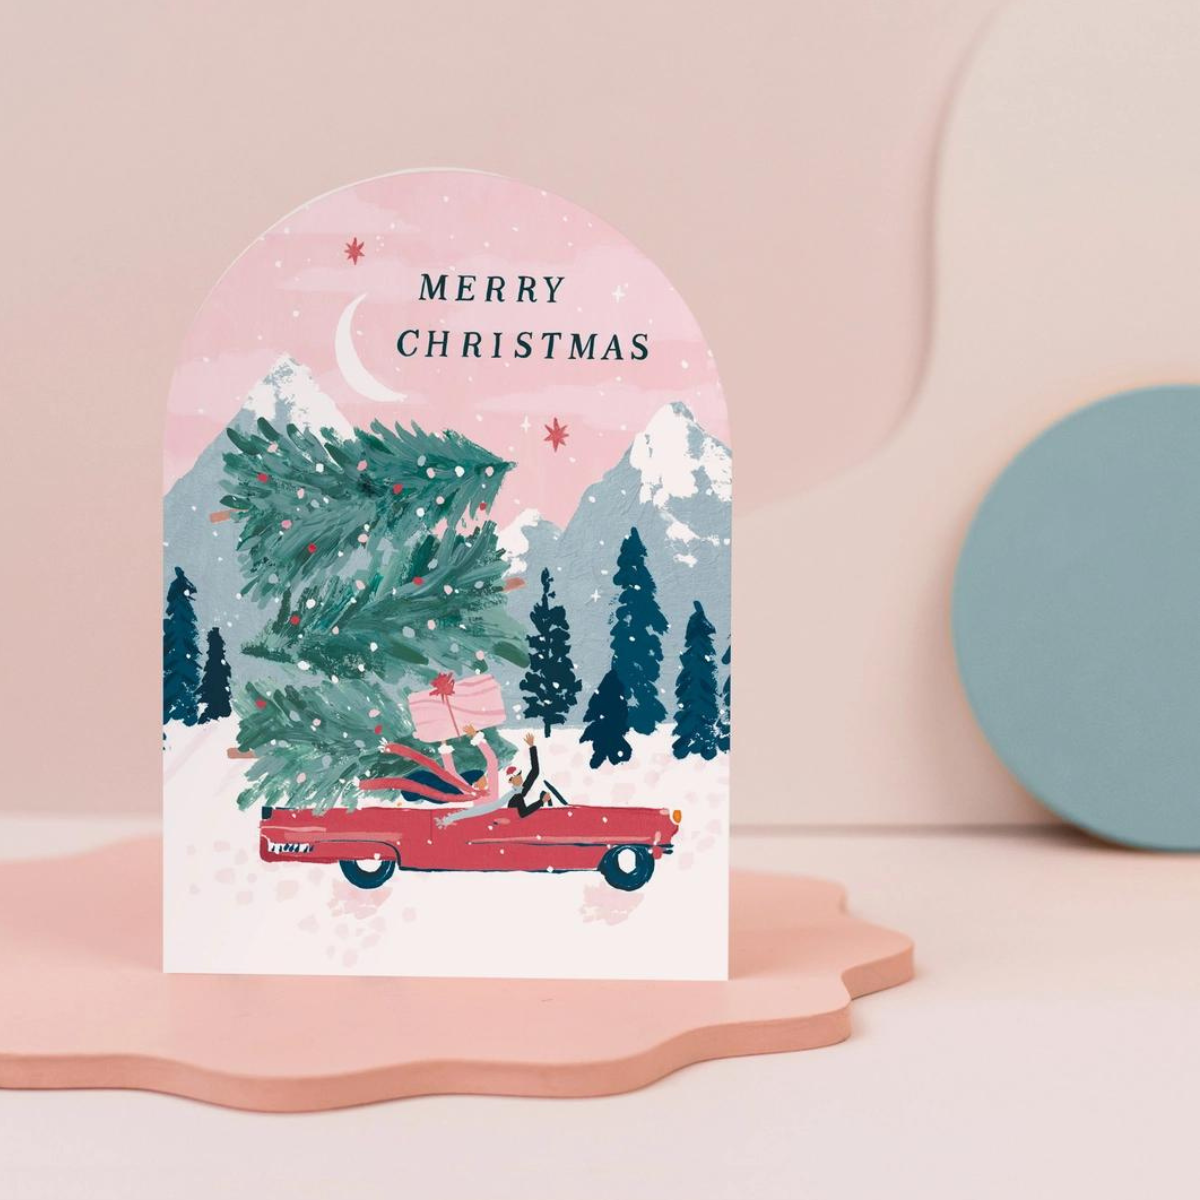 Offrez cette jolie carte pour répandre la joie, la chaleur et l'amour qui caractérisent les fêtes de fin d'année.